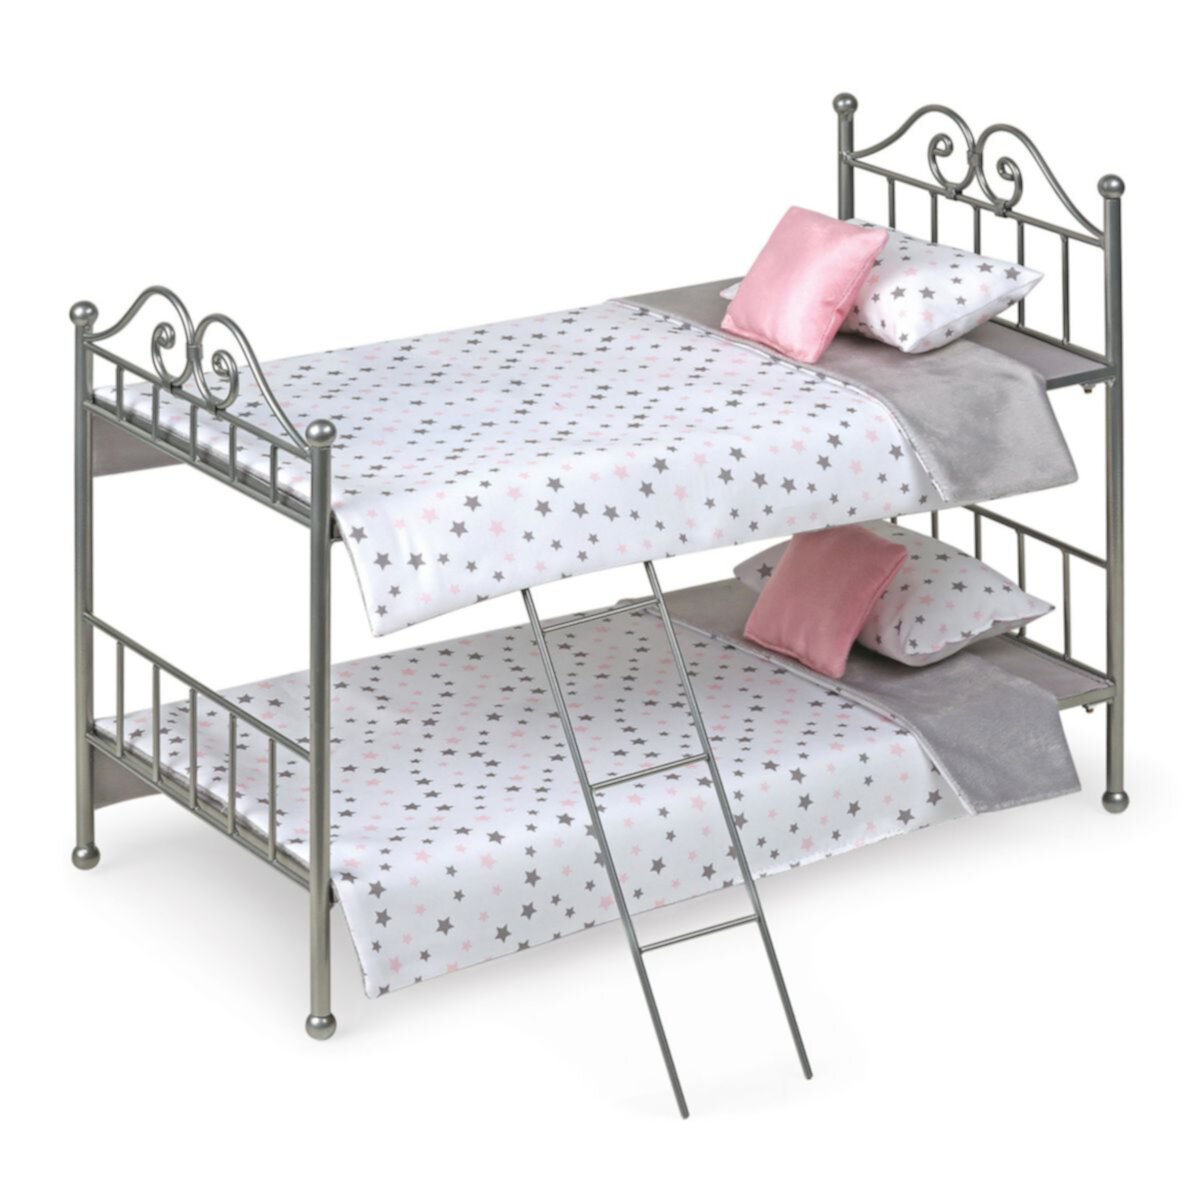 Металлическая двухъярусная кровать для кукол из барсука с завитками, лестница и постельные принадлежности Badger Basket